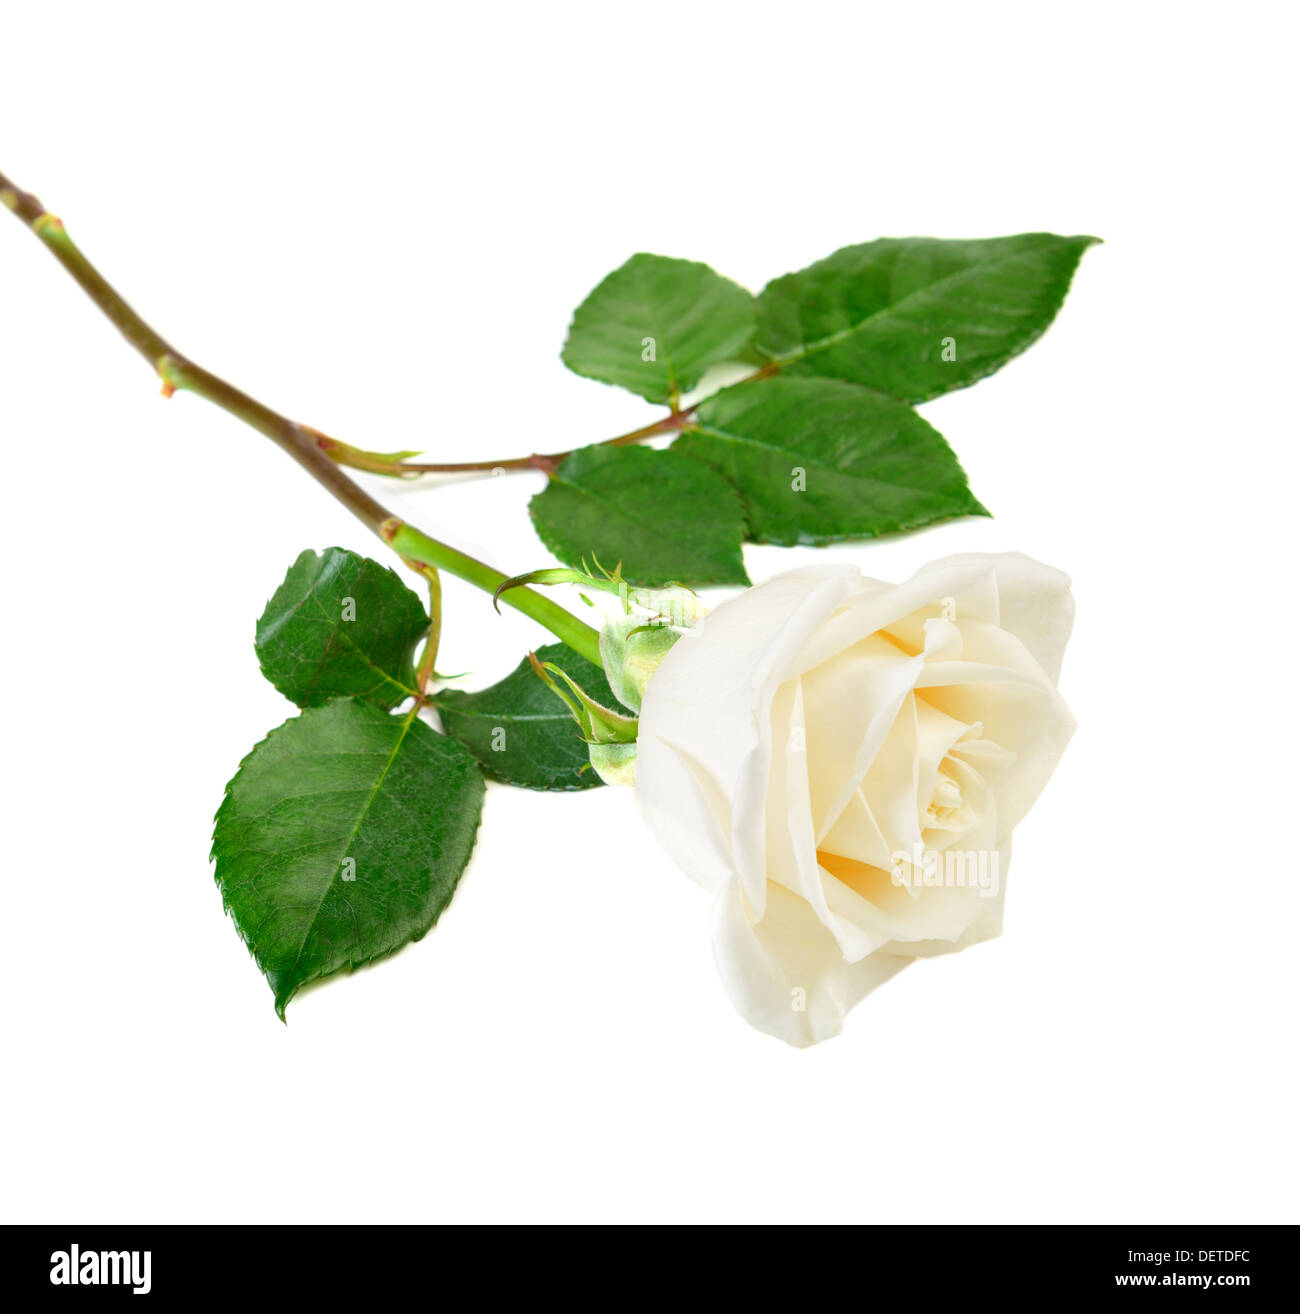 Rosa bianca immagini e fotografie stock ad alta risoluzione - Alamy